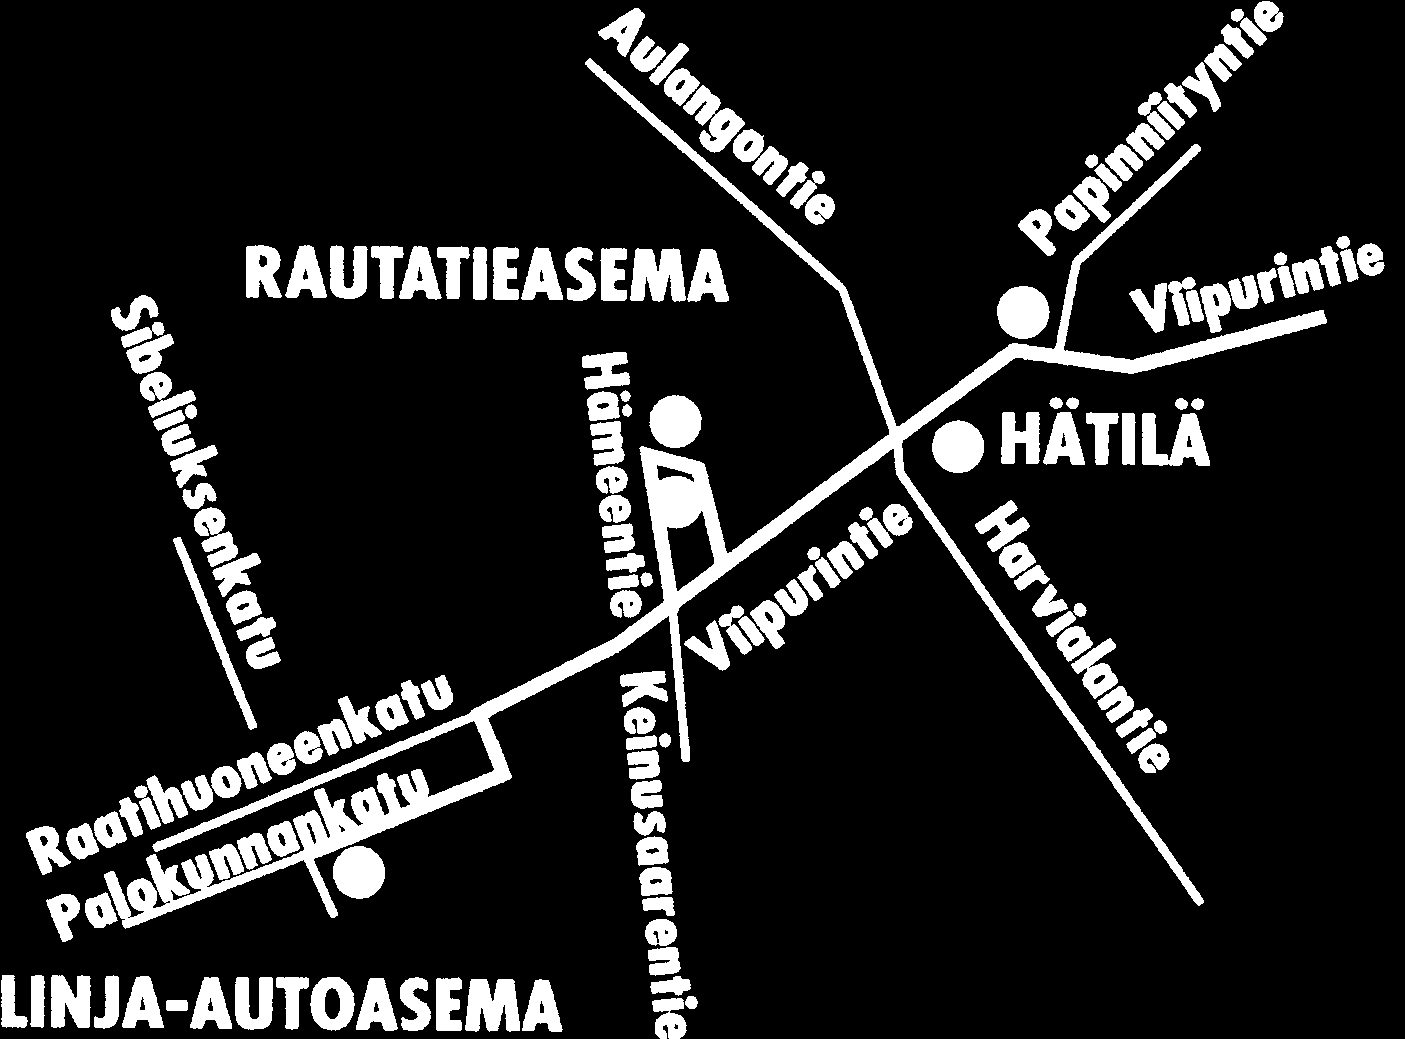 suunta: Uimahalli, Imatrankoski ja Saareksinmäki